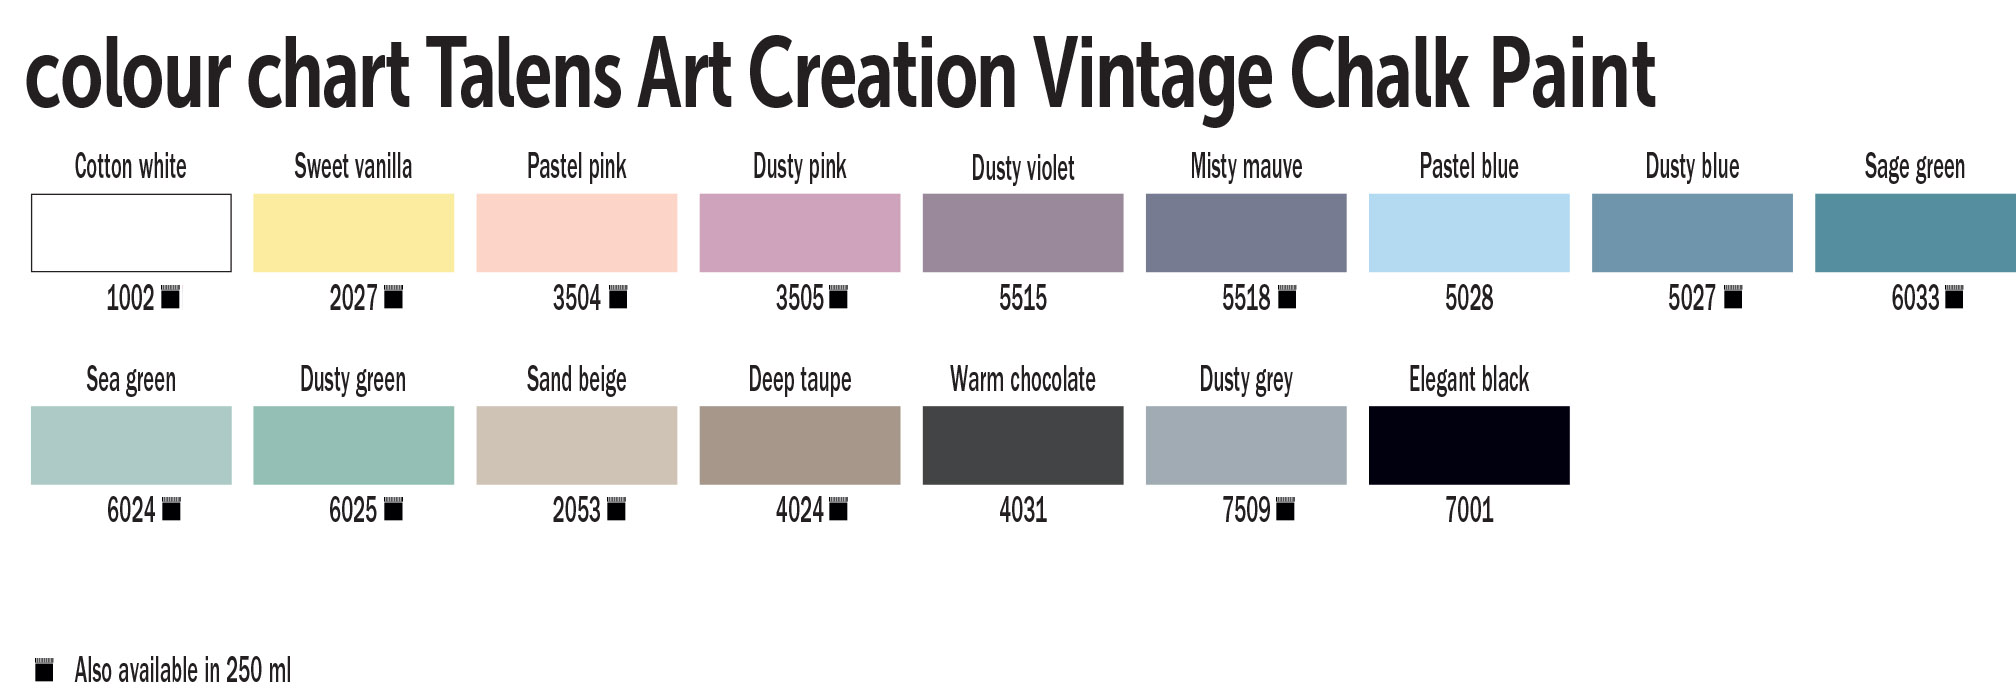 TAC Vintage Chalk paint colour chart